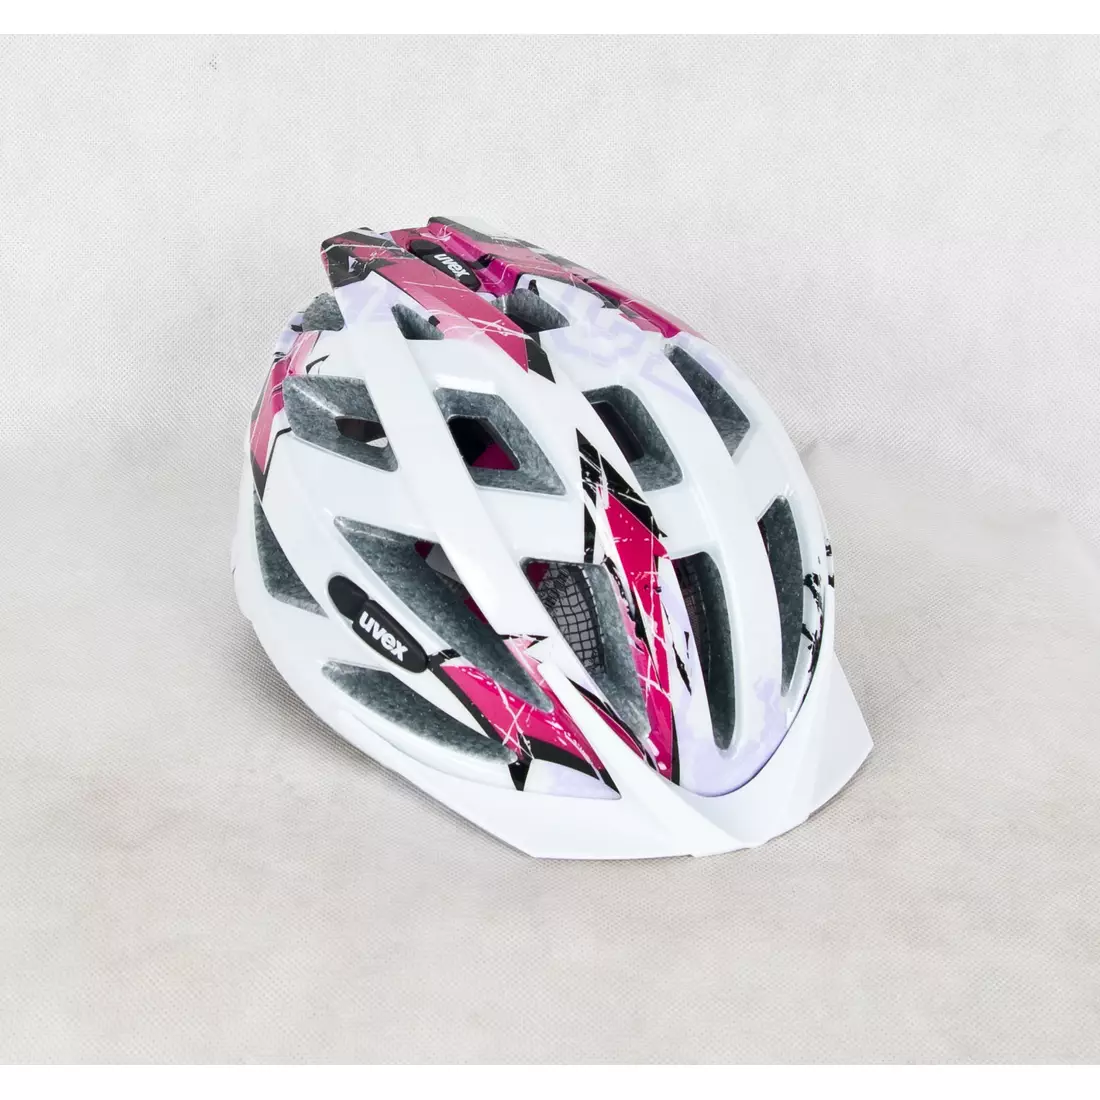 UVEX Fahrradhelm AIR WING, weiß und pink